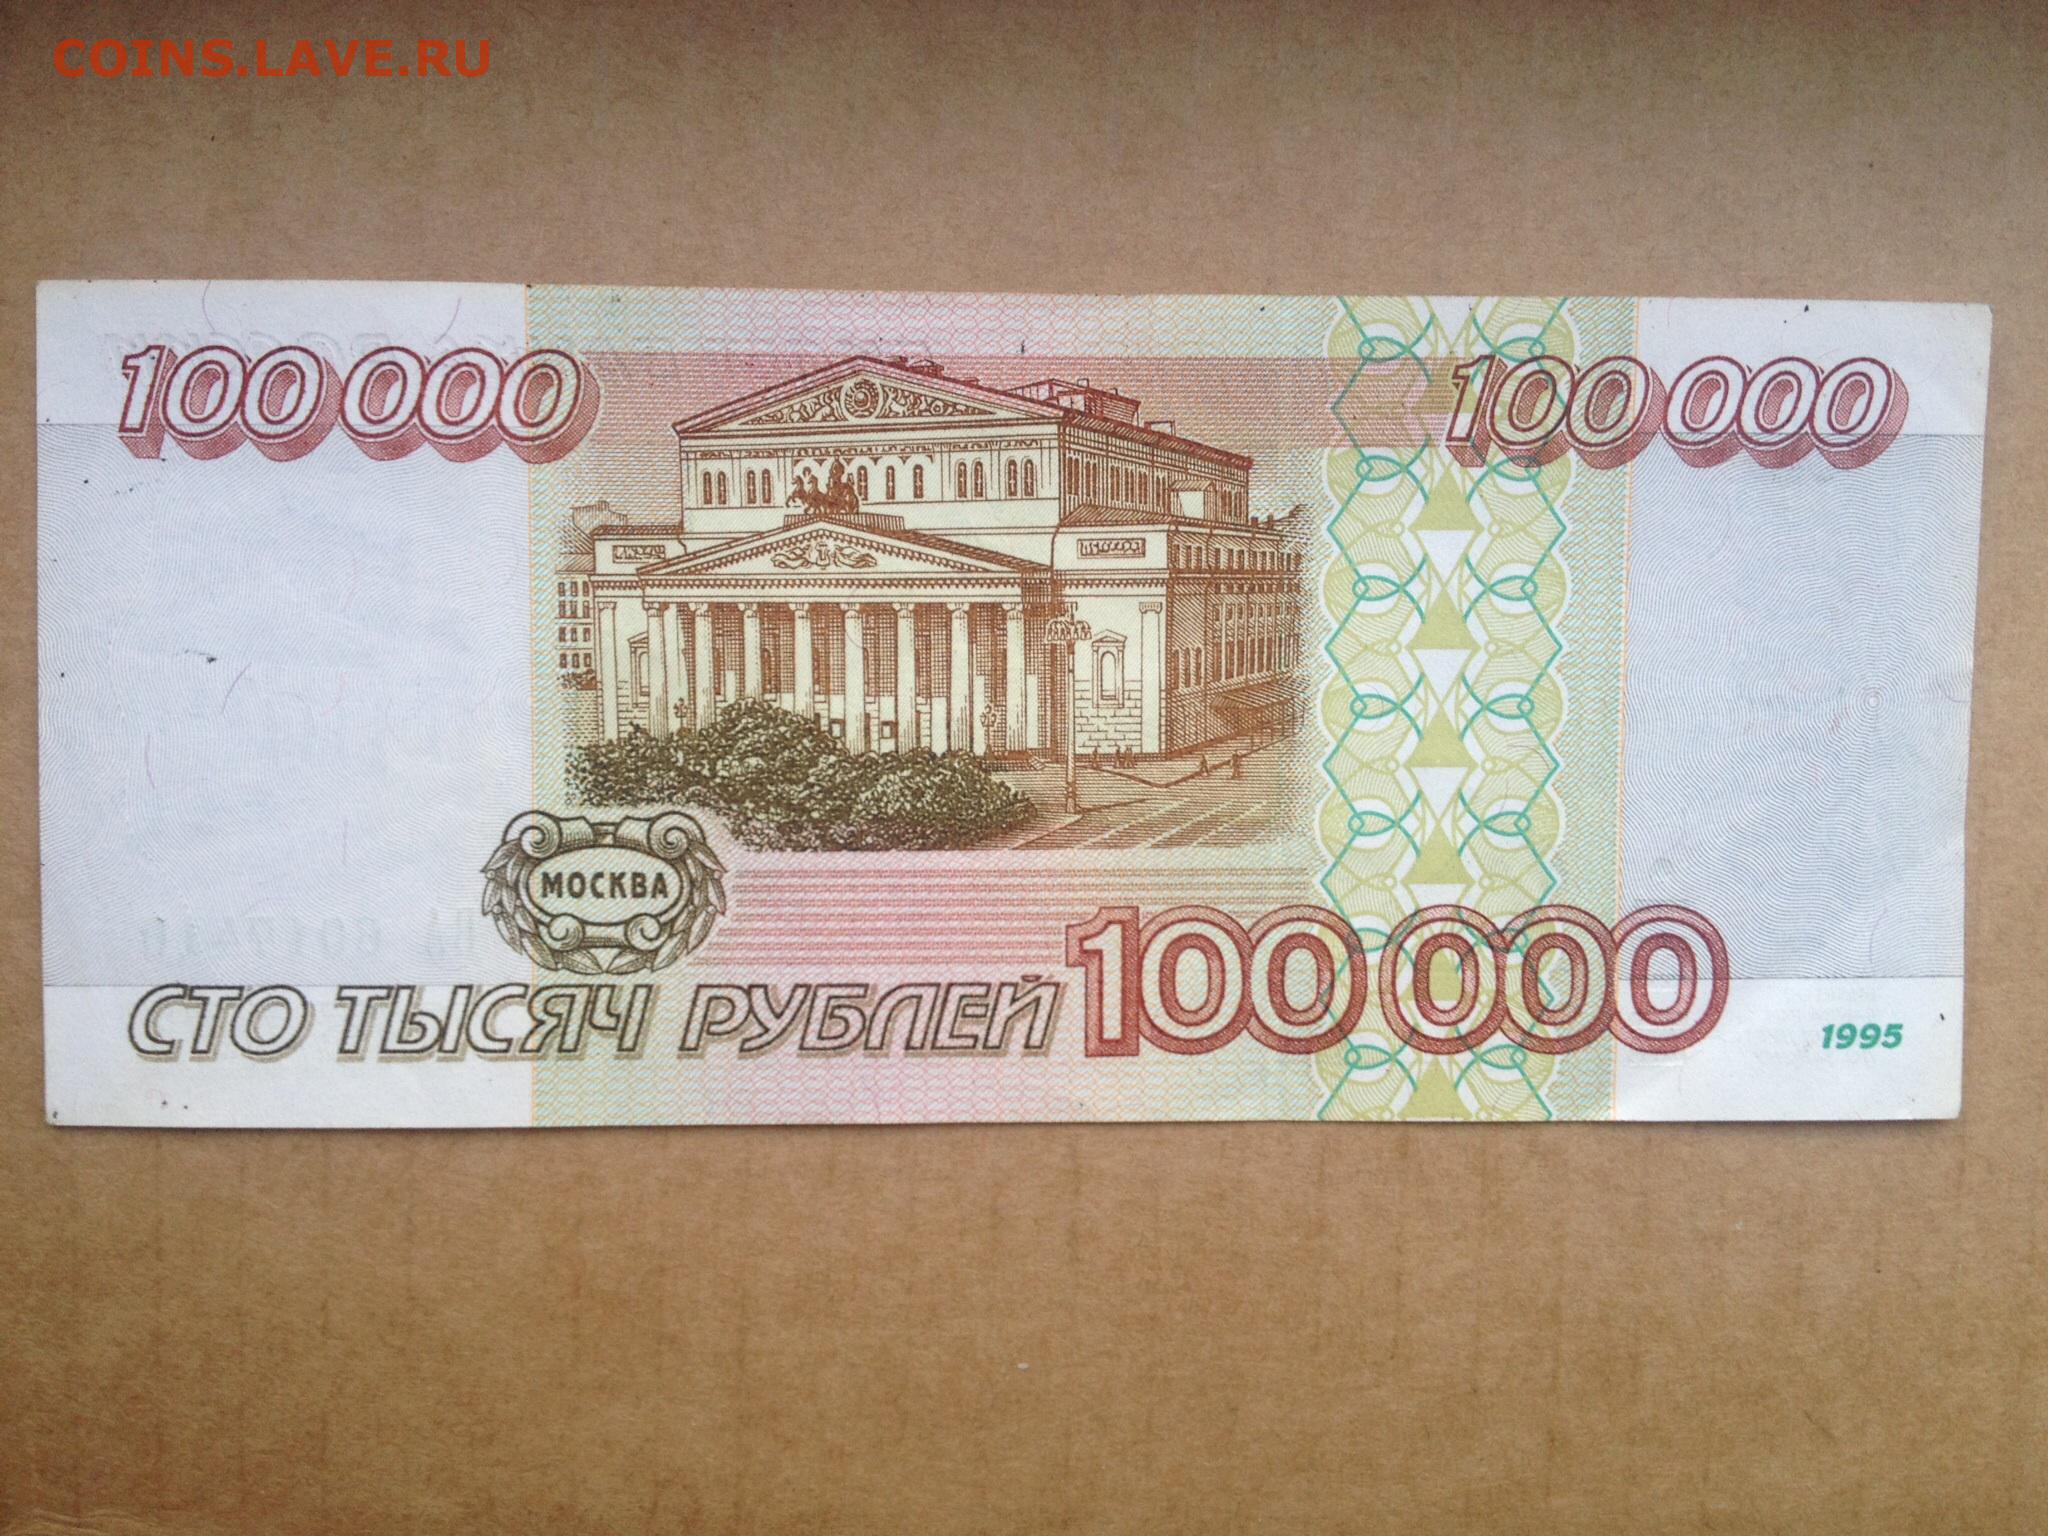 Сто пятьдесят девять рублей. Банкнота 100 000 рублей. 100 000 Рублей купюра. 100 000 Рублей 1995 года. 100 Рублей 1995.